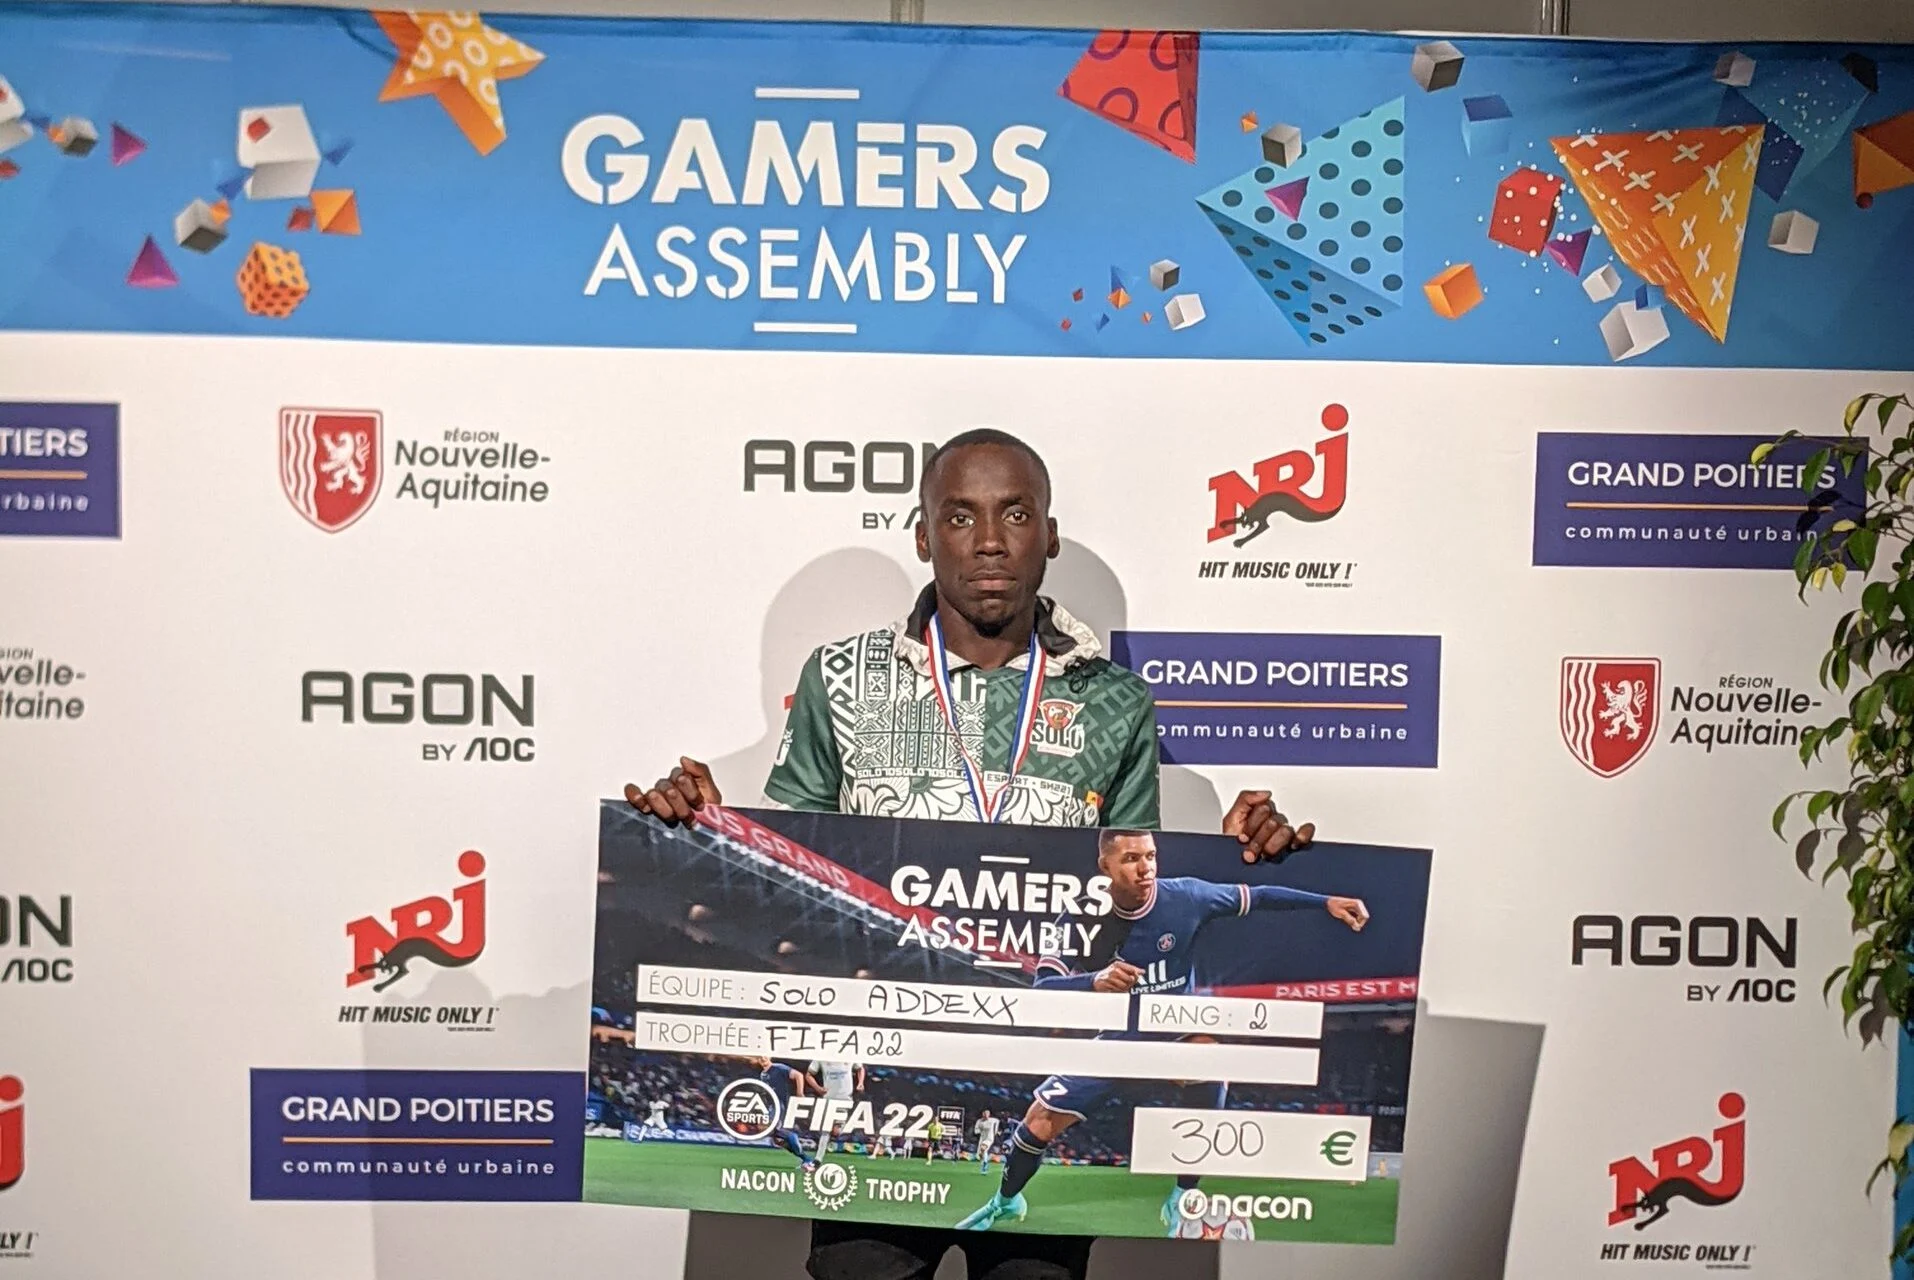 Fifa22 Gamer Assembly : Addexx de Solo Esport s’offre la deuxième place